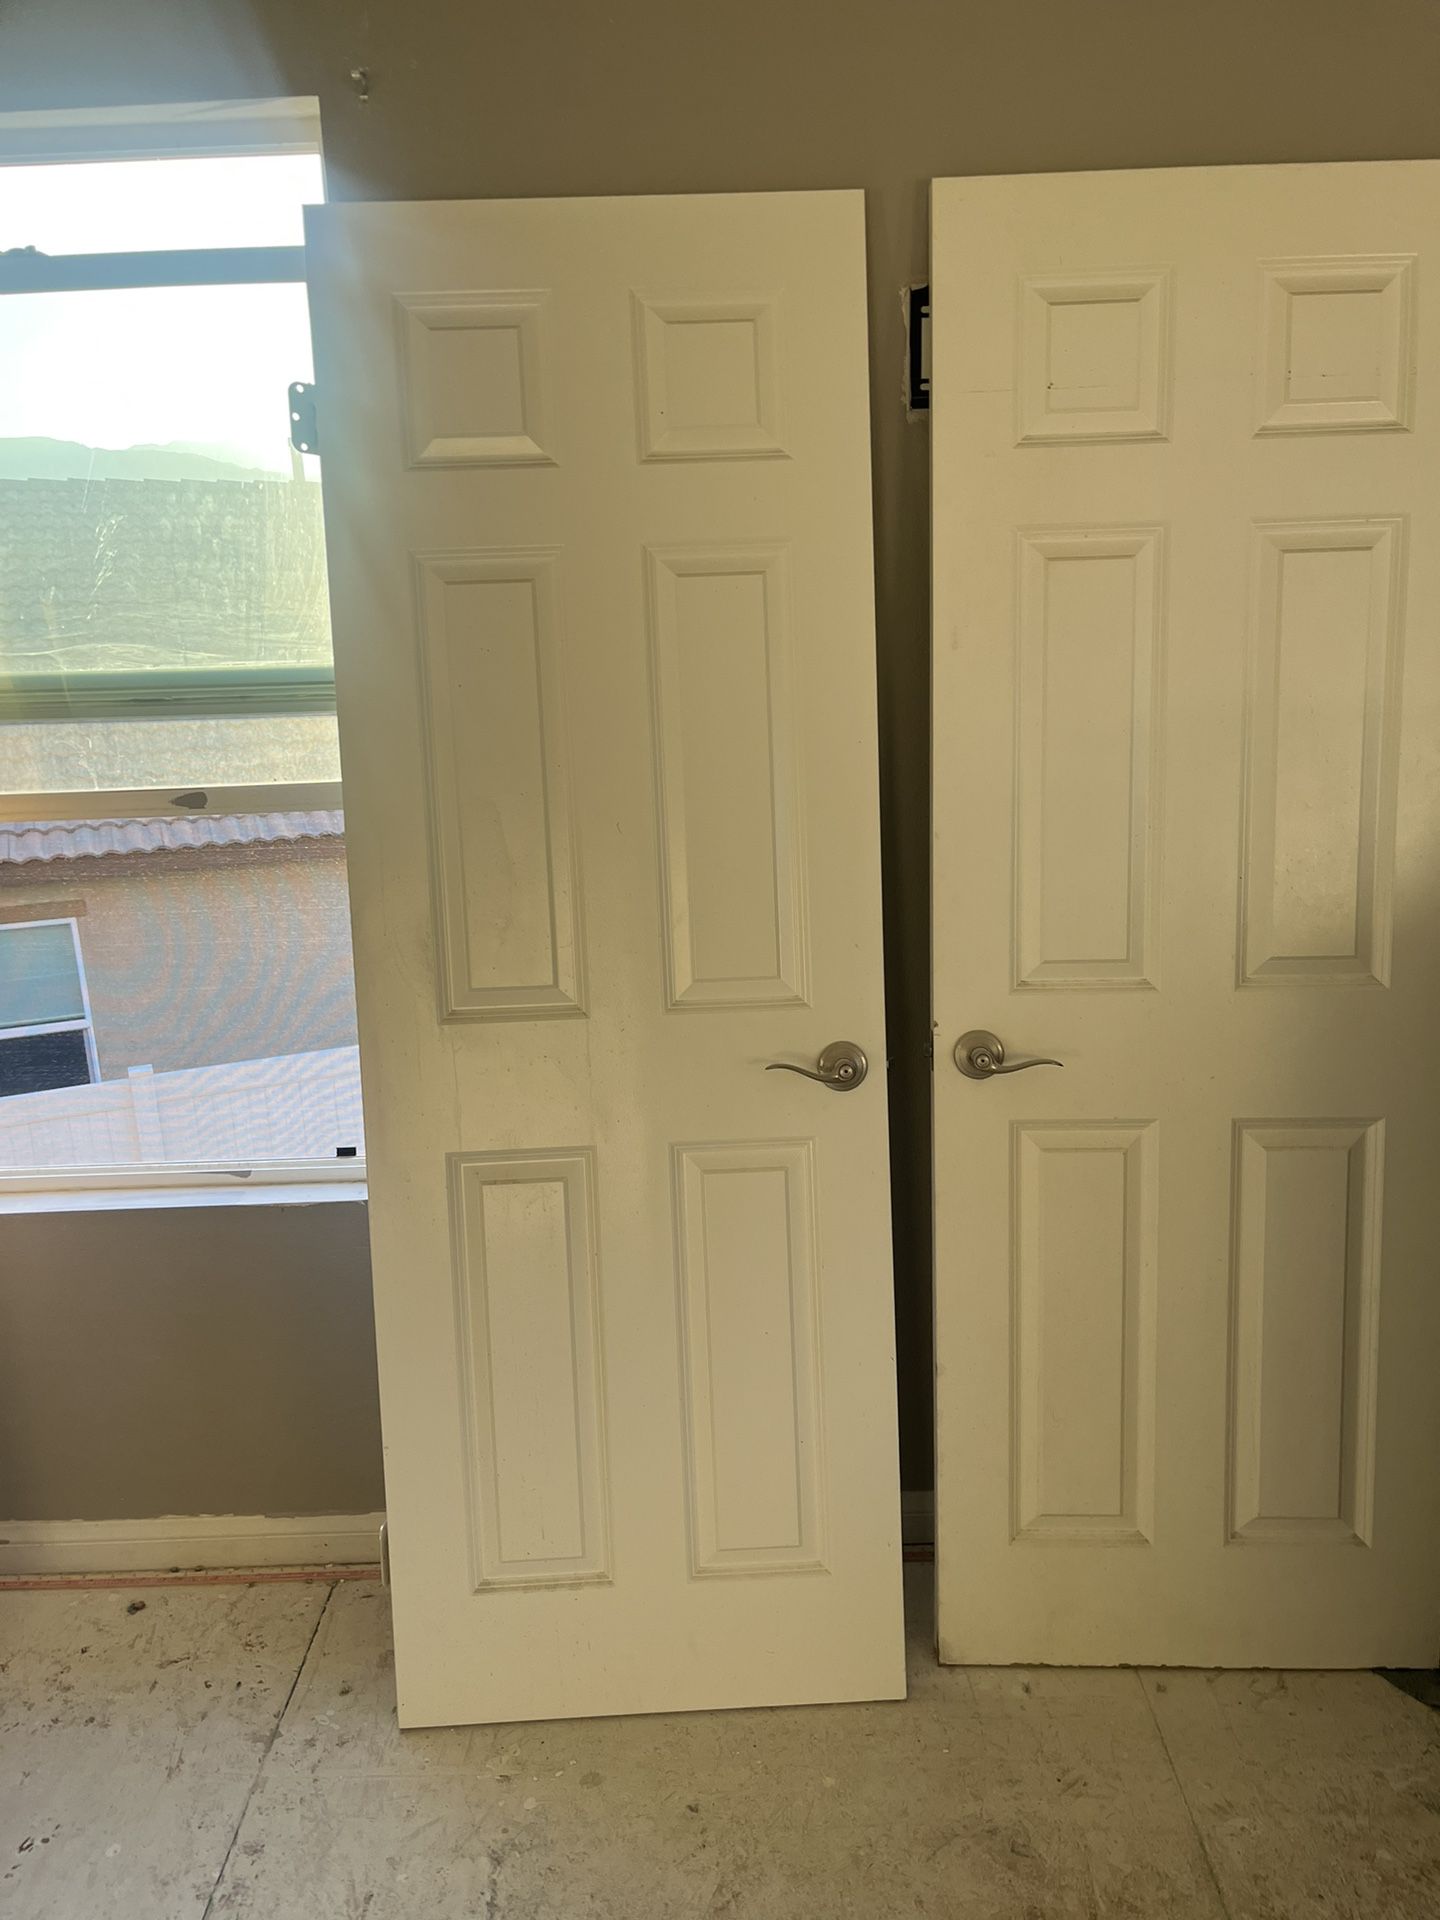 Prehung Door & Slab 6 Panel Doors With Handles And Hinges